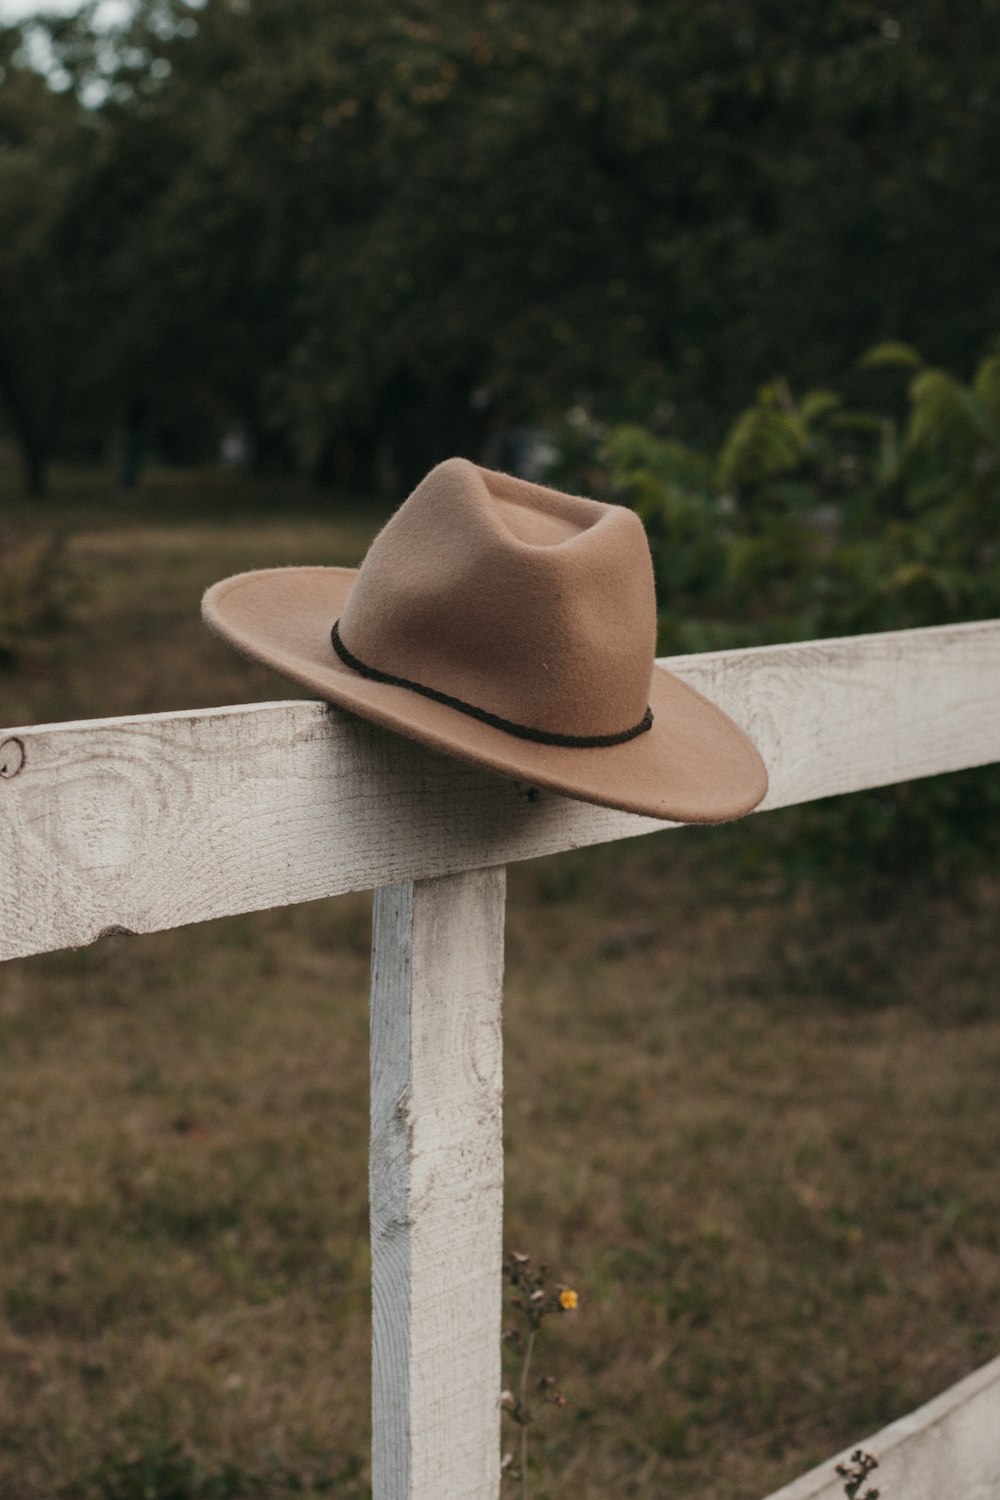 cappello da cowboy marrone su staccionata di legno